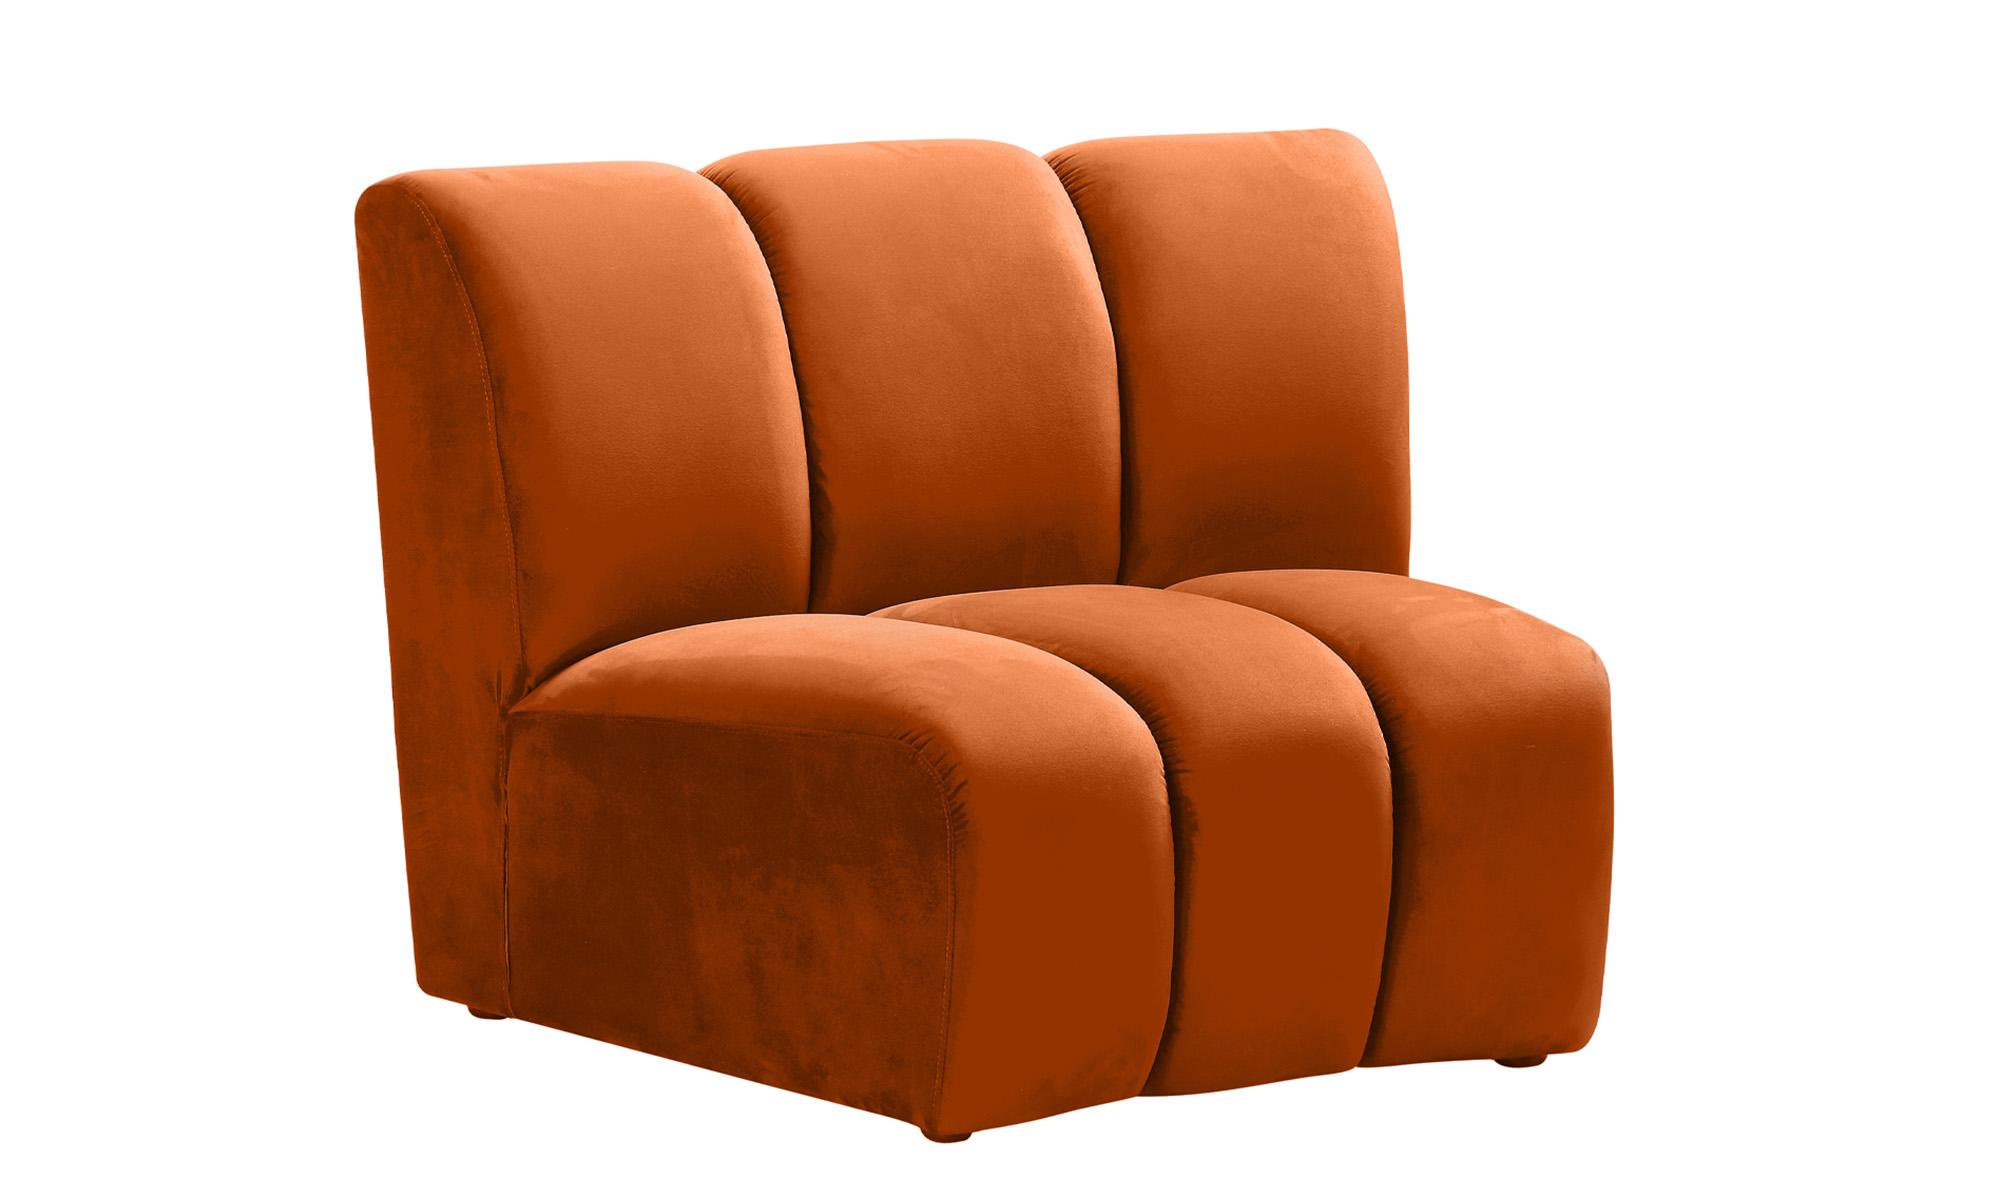 

    
638Cognac-11PC Meridian Furniture Modular Sectional Sofa
